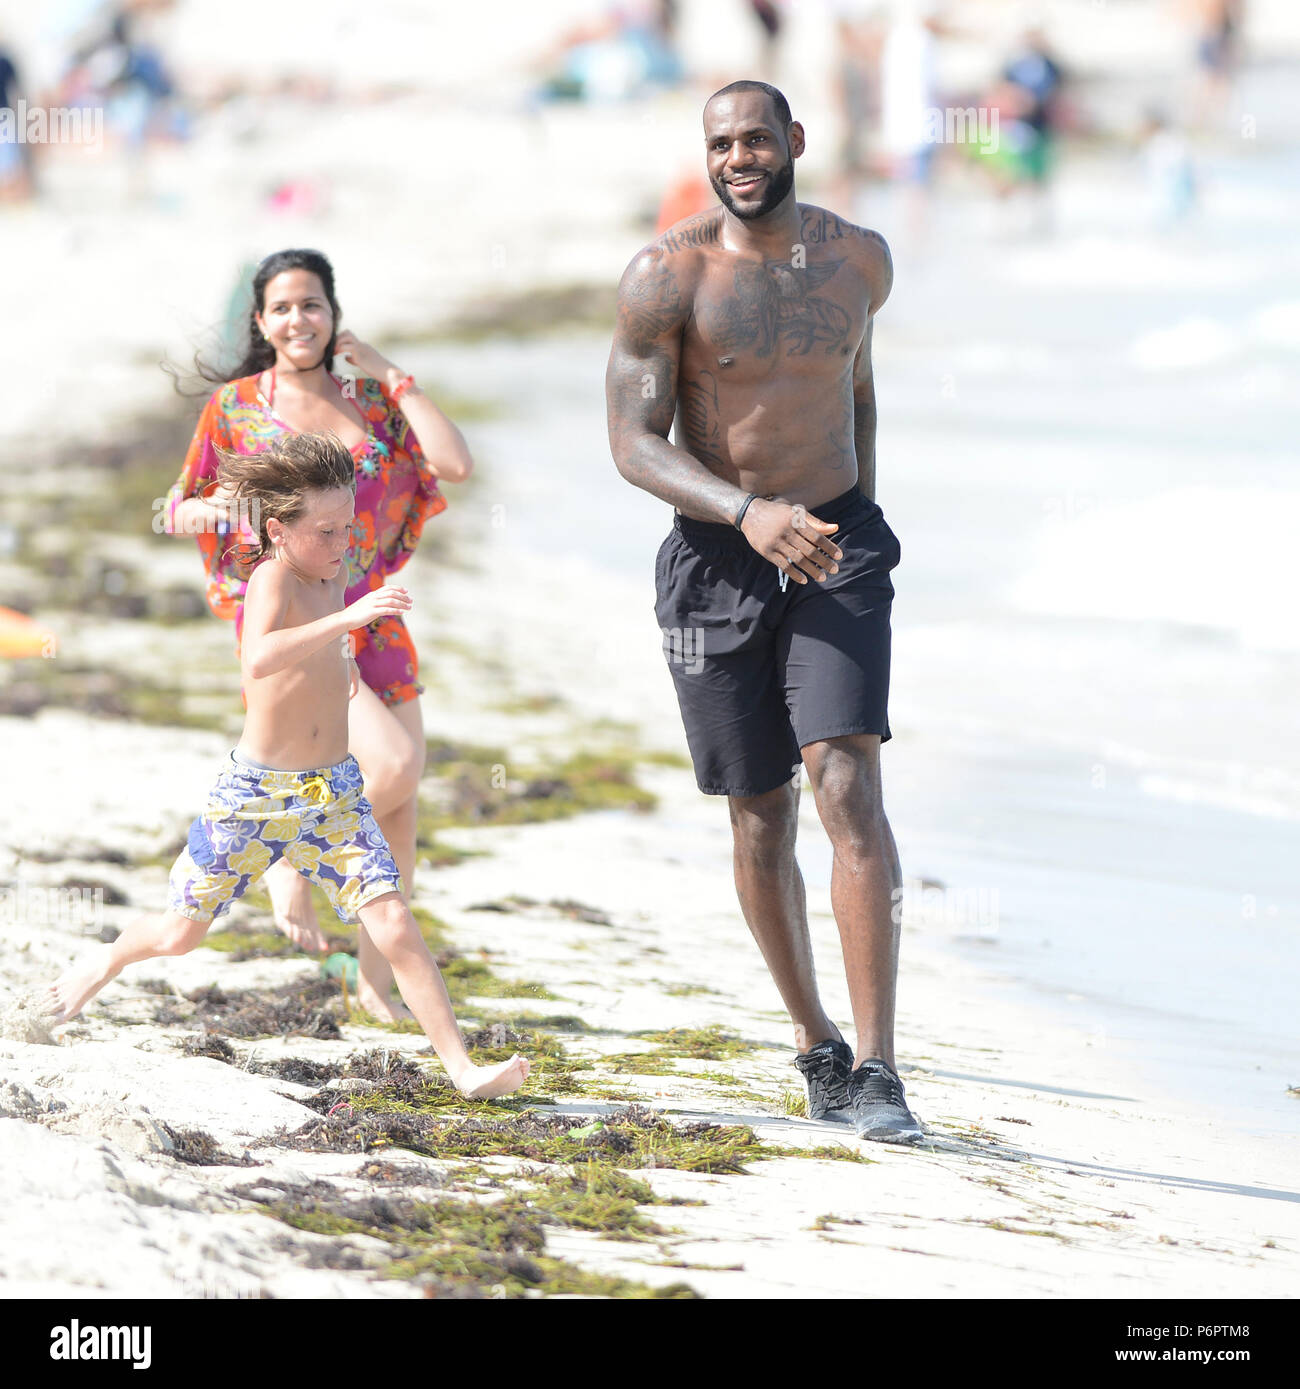 MIAMI BEACH, FL - 16 de agosto: James apareció en ubicación en Miami Beach para un de Nike. Campeón de NBA nos montamos en una bicicleta y corrió alrededor